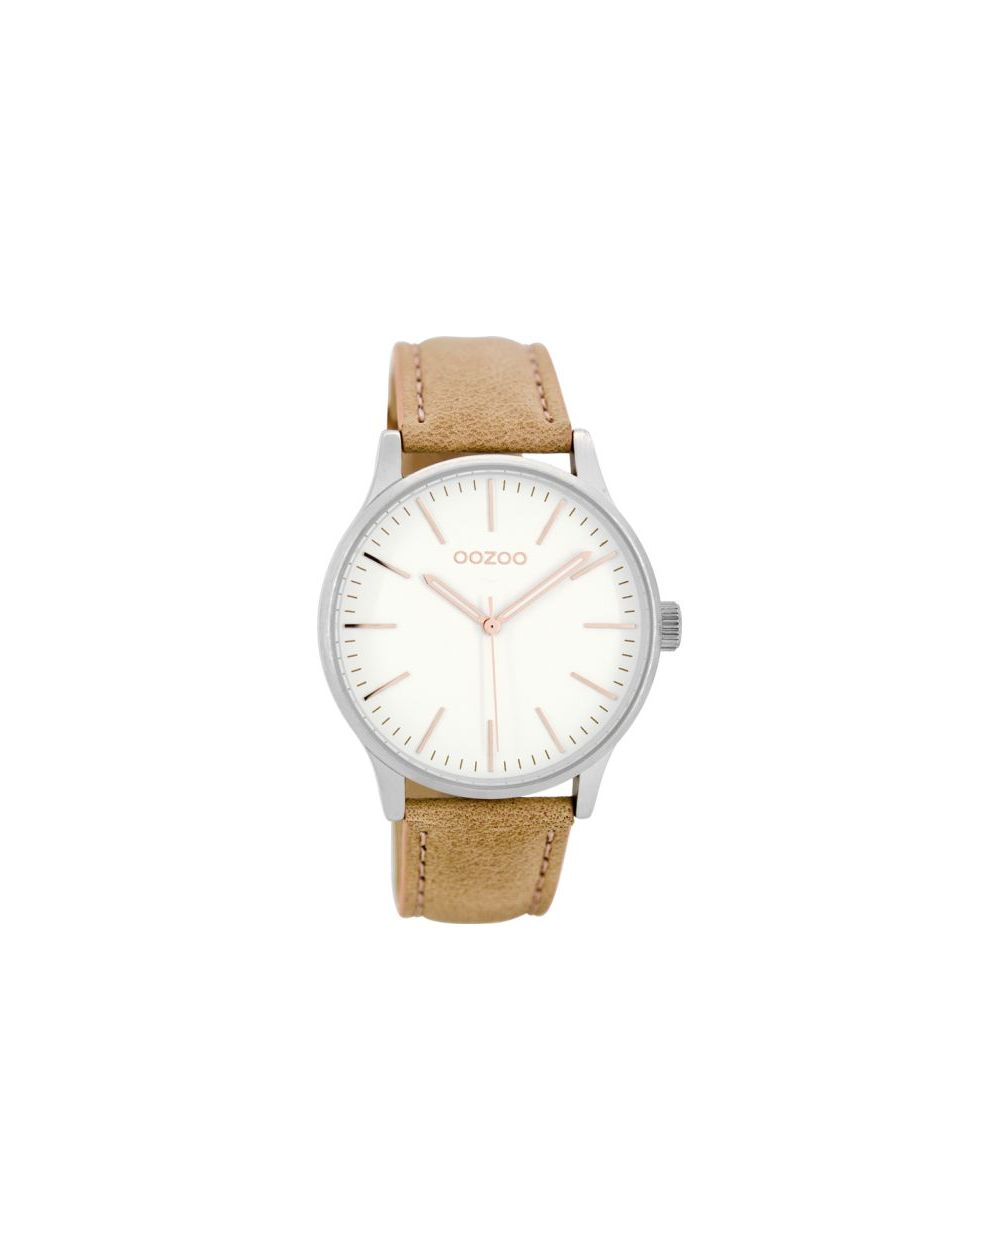 Oozoo montre/watch/horloge C8541